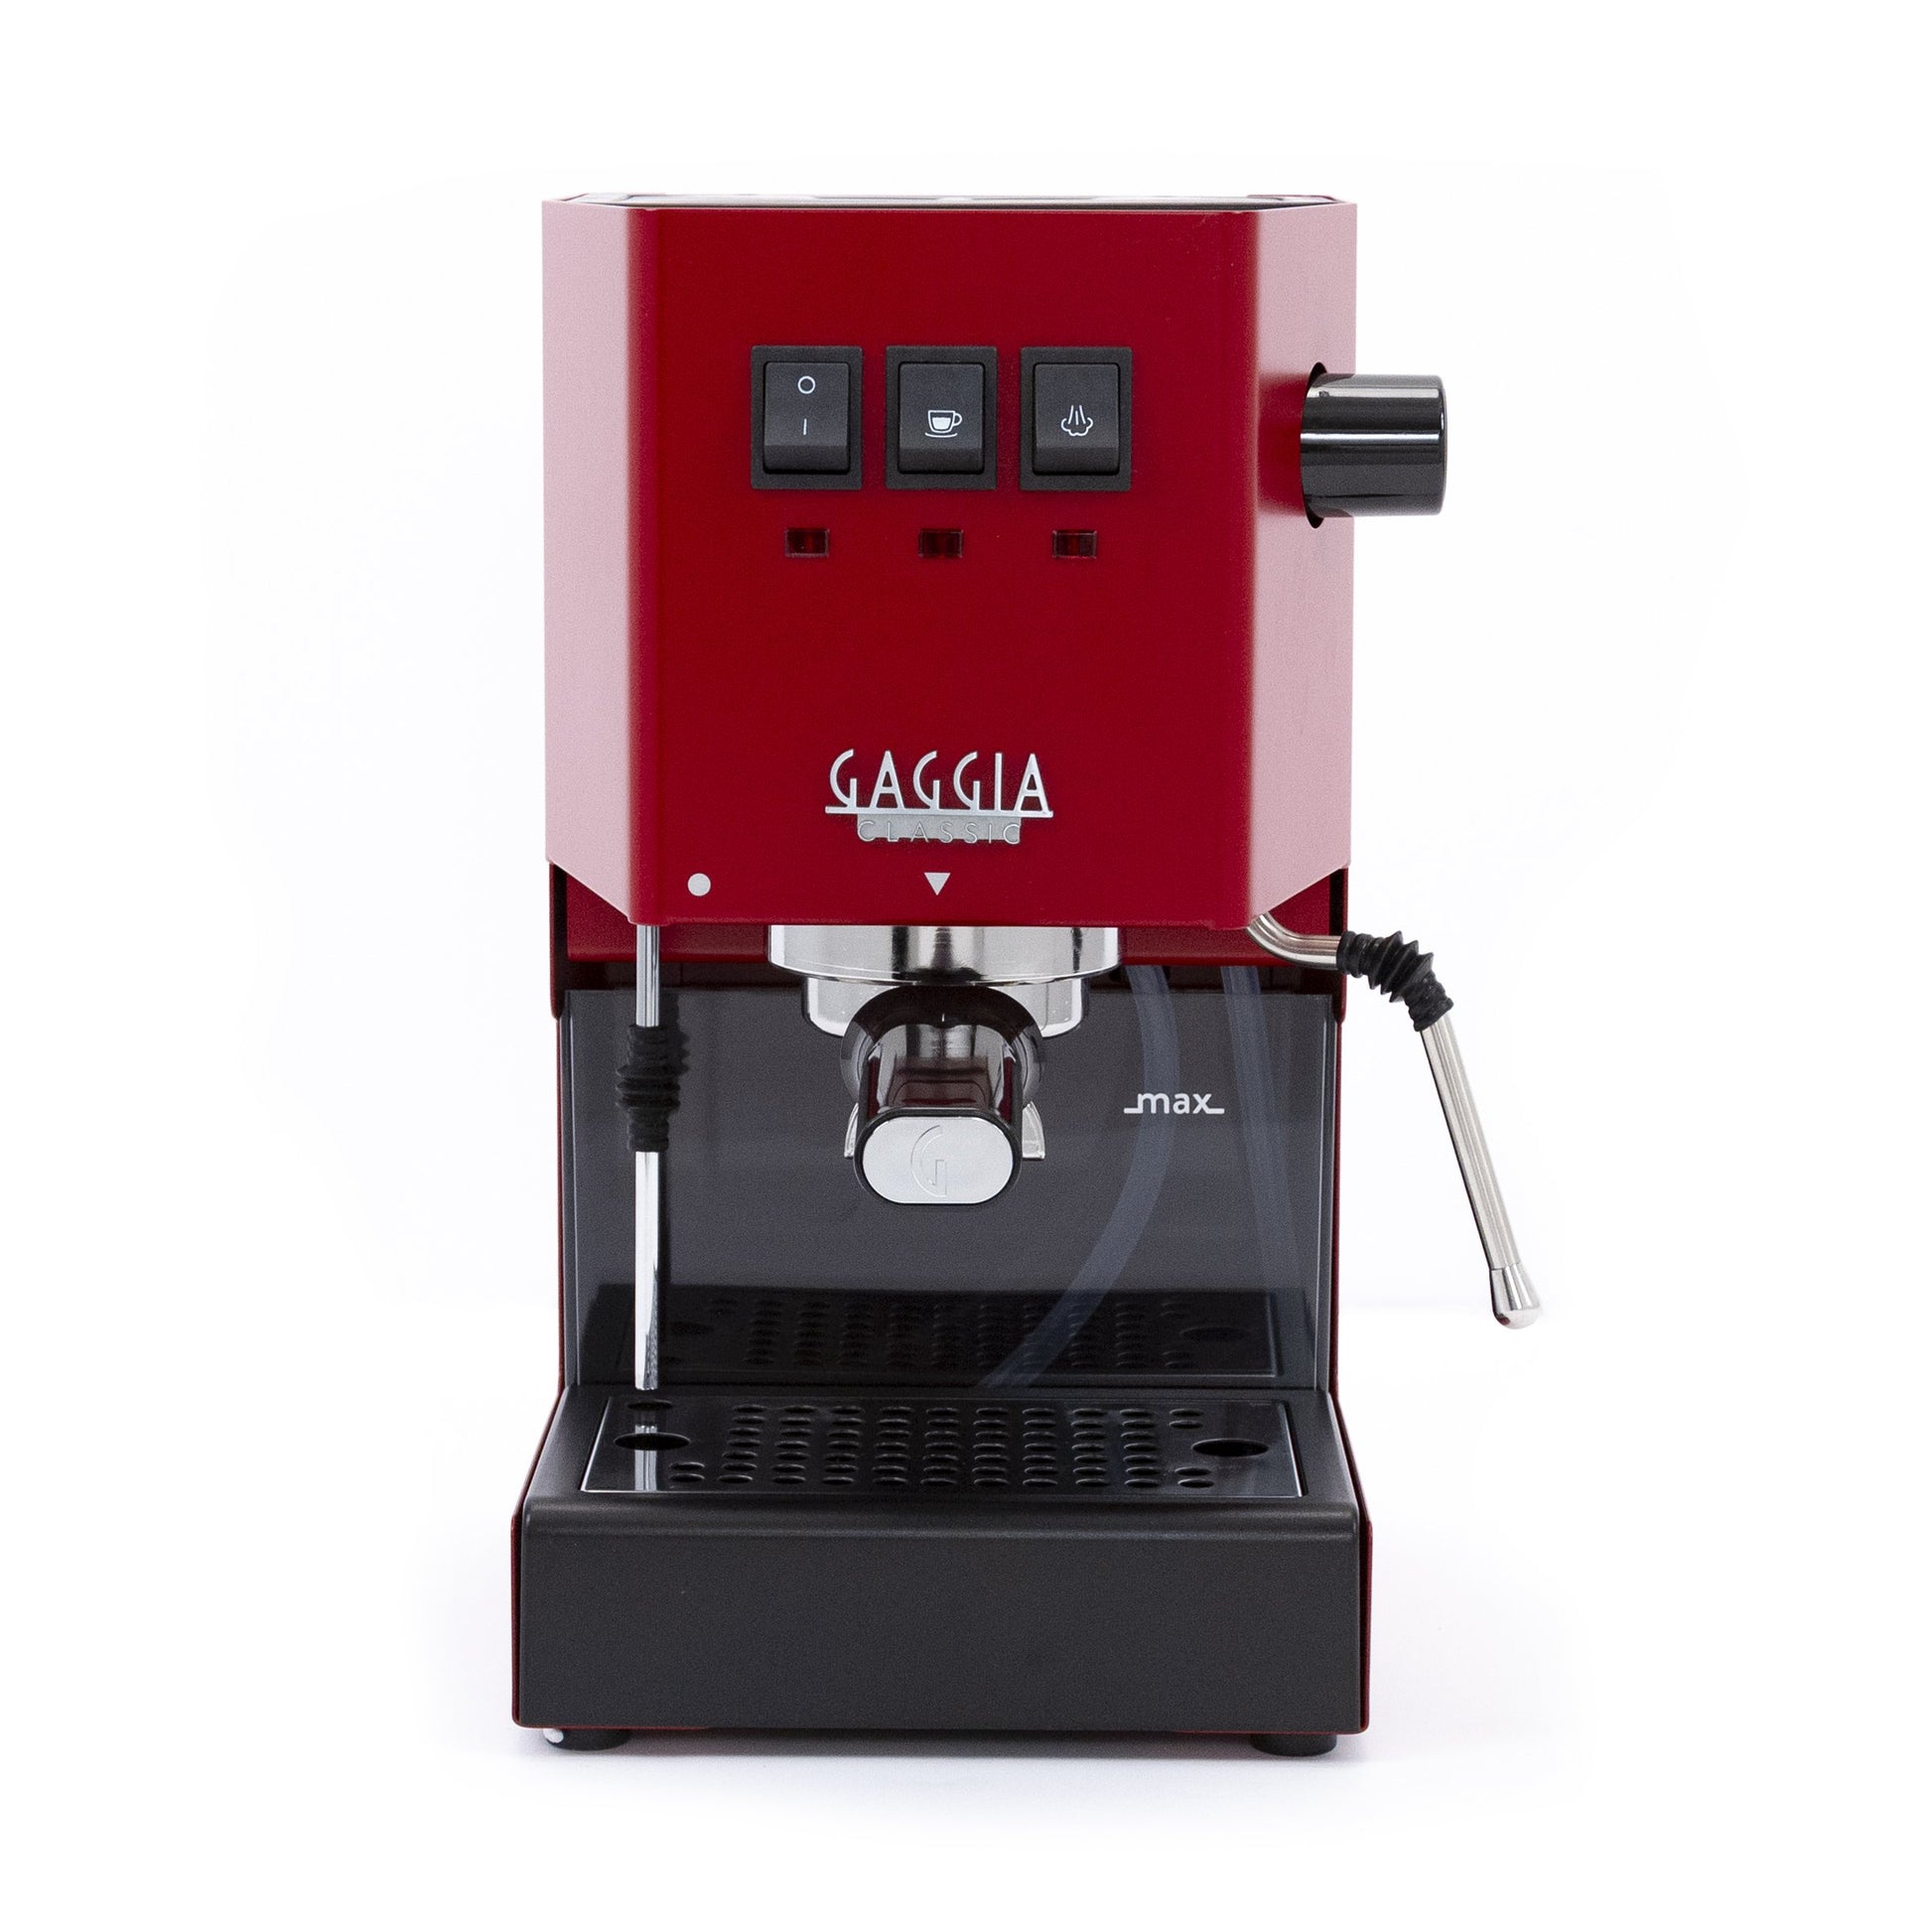 Gaggia Classic Pro Espresso Machine in Cherry Red - Front View